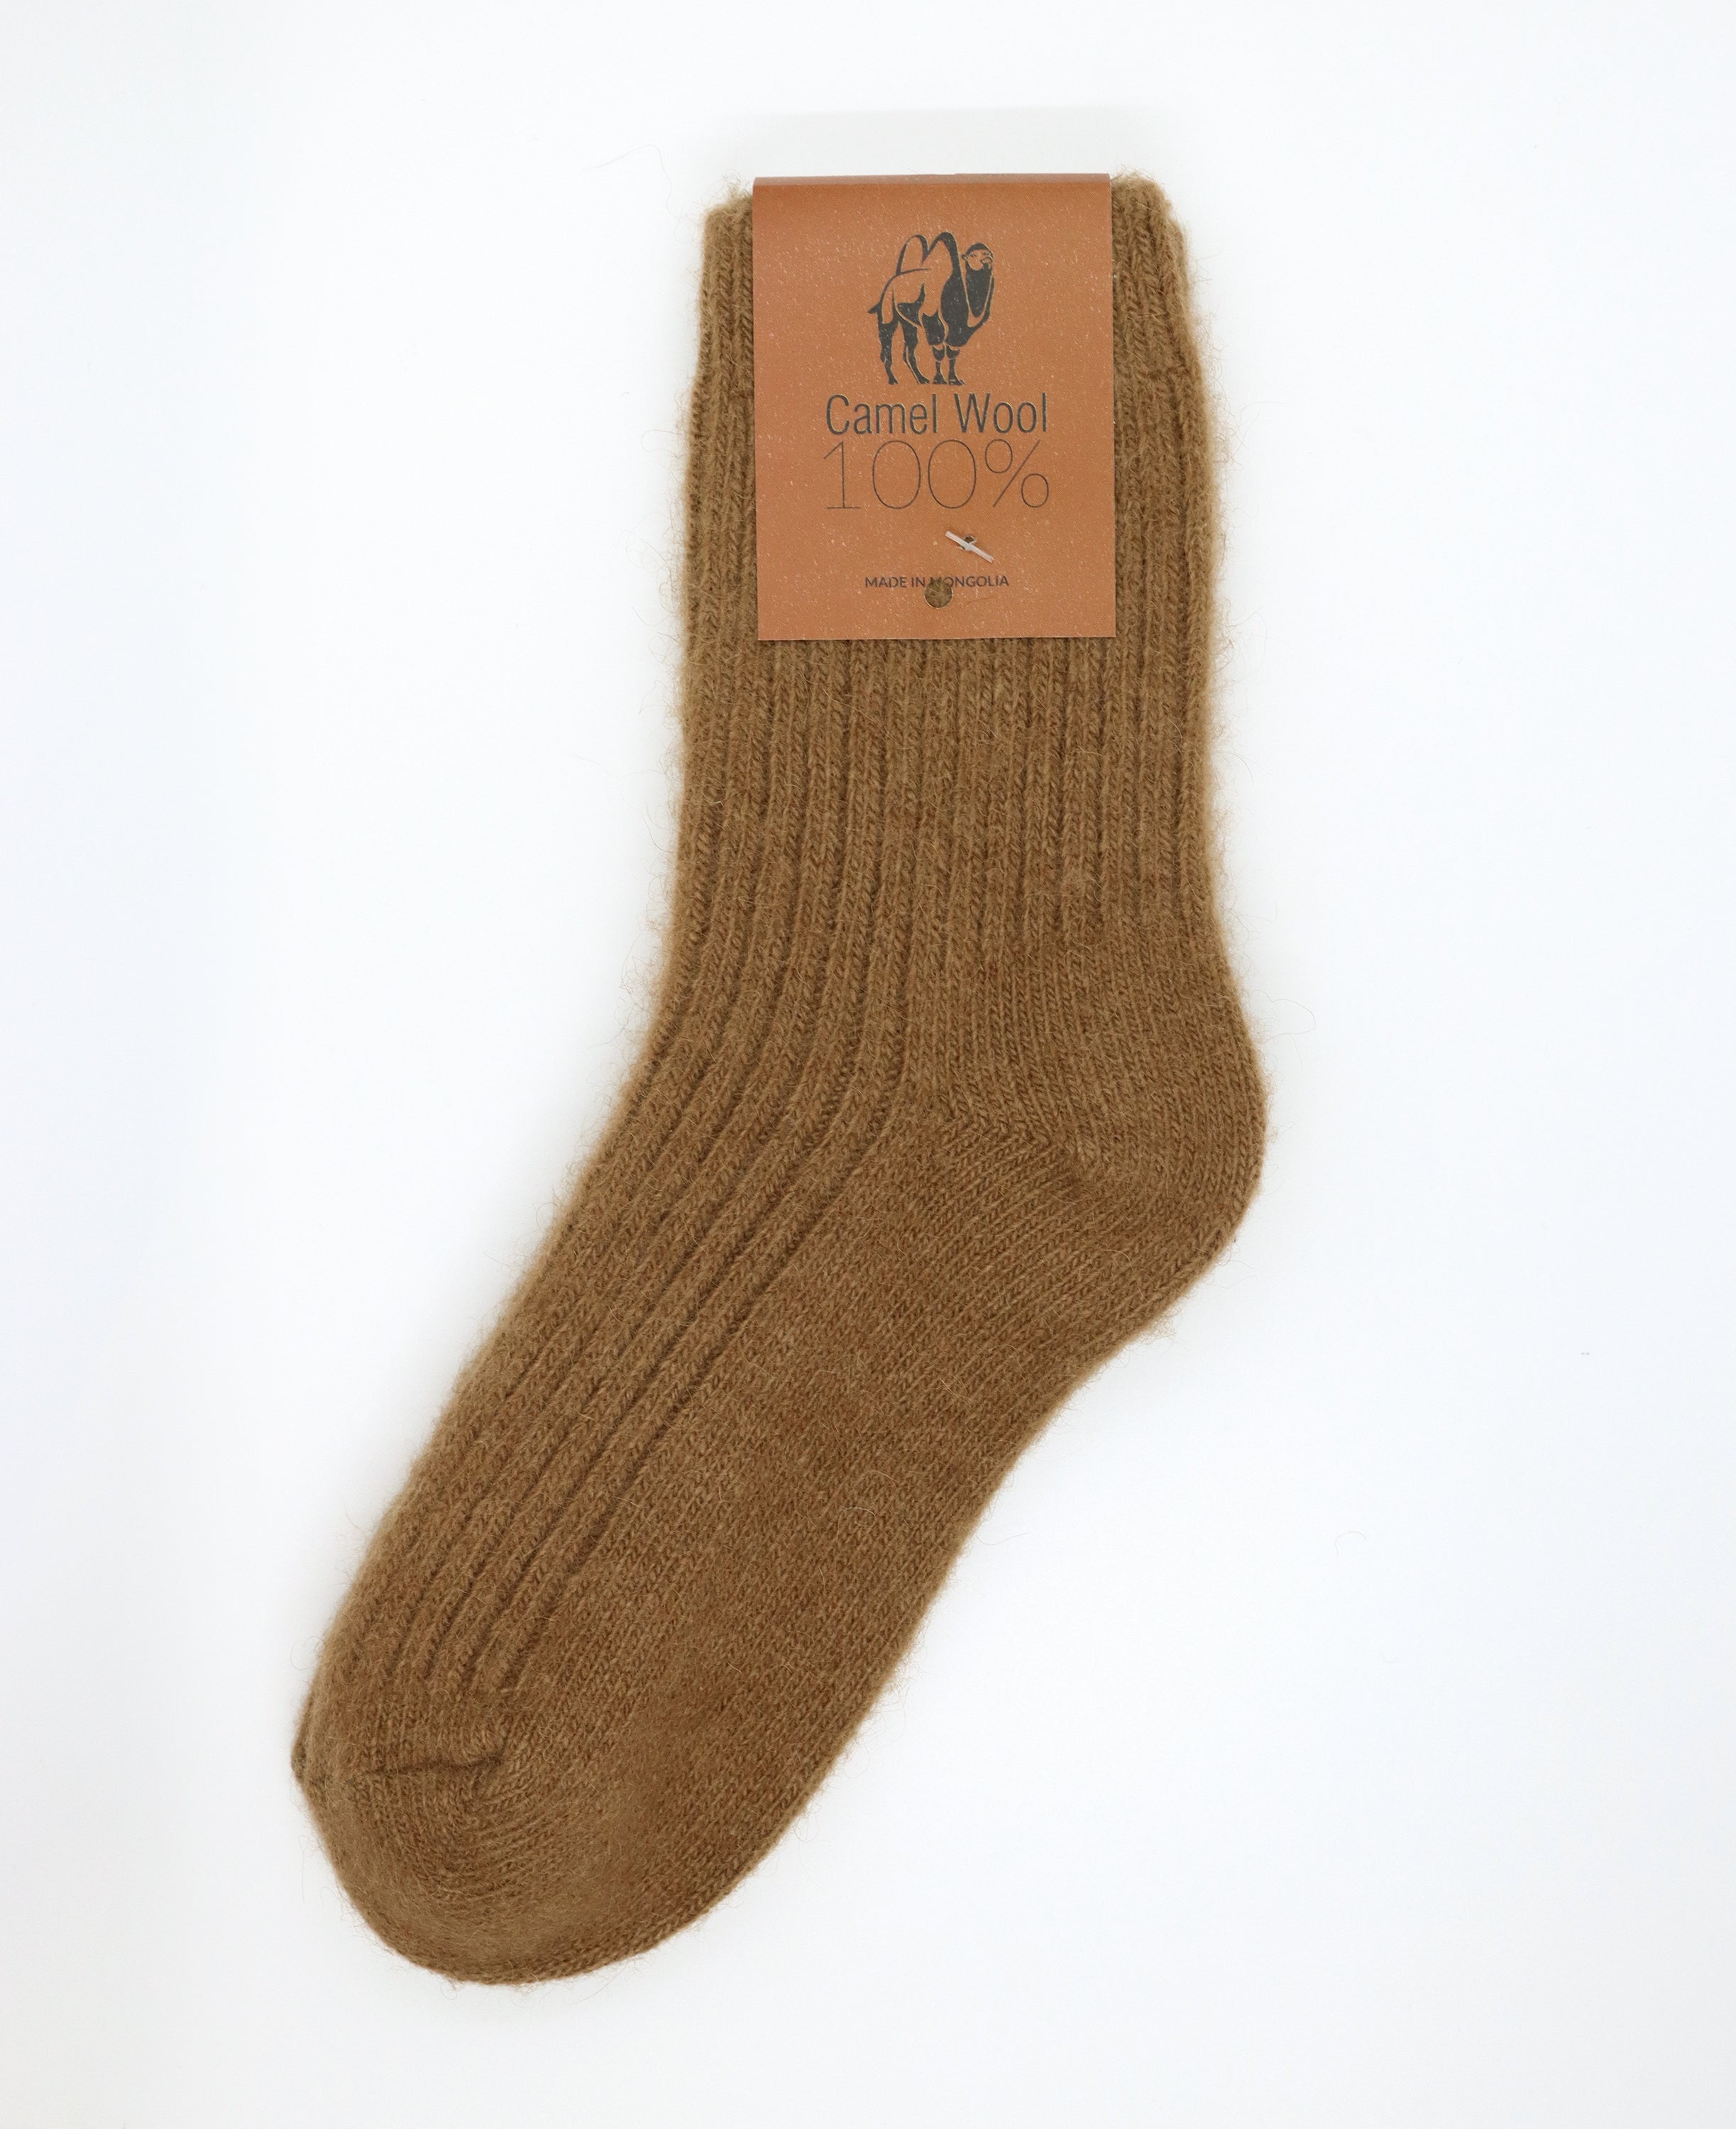 Mongolian Camel Hair Socks – One Day Mongolia: Online Shopping